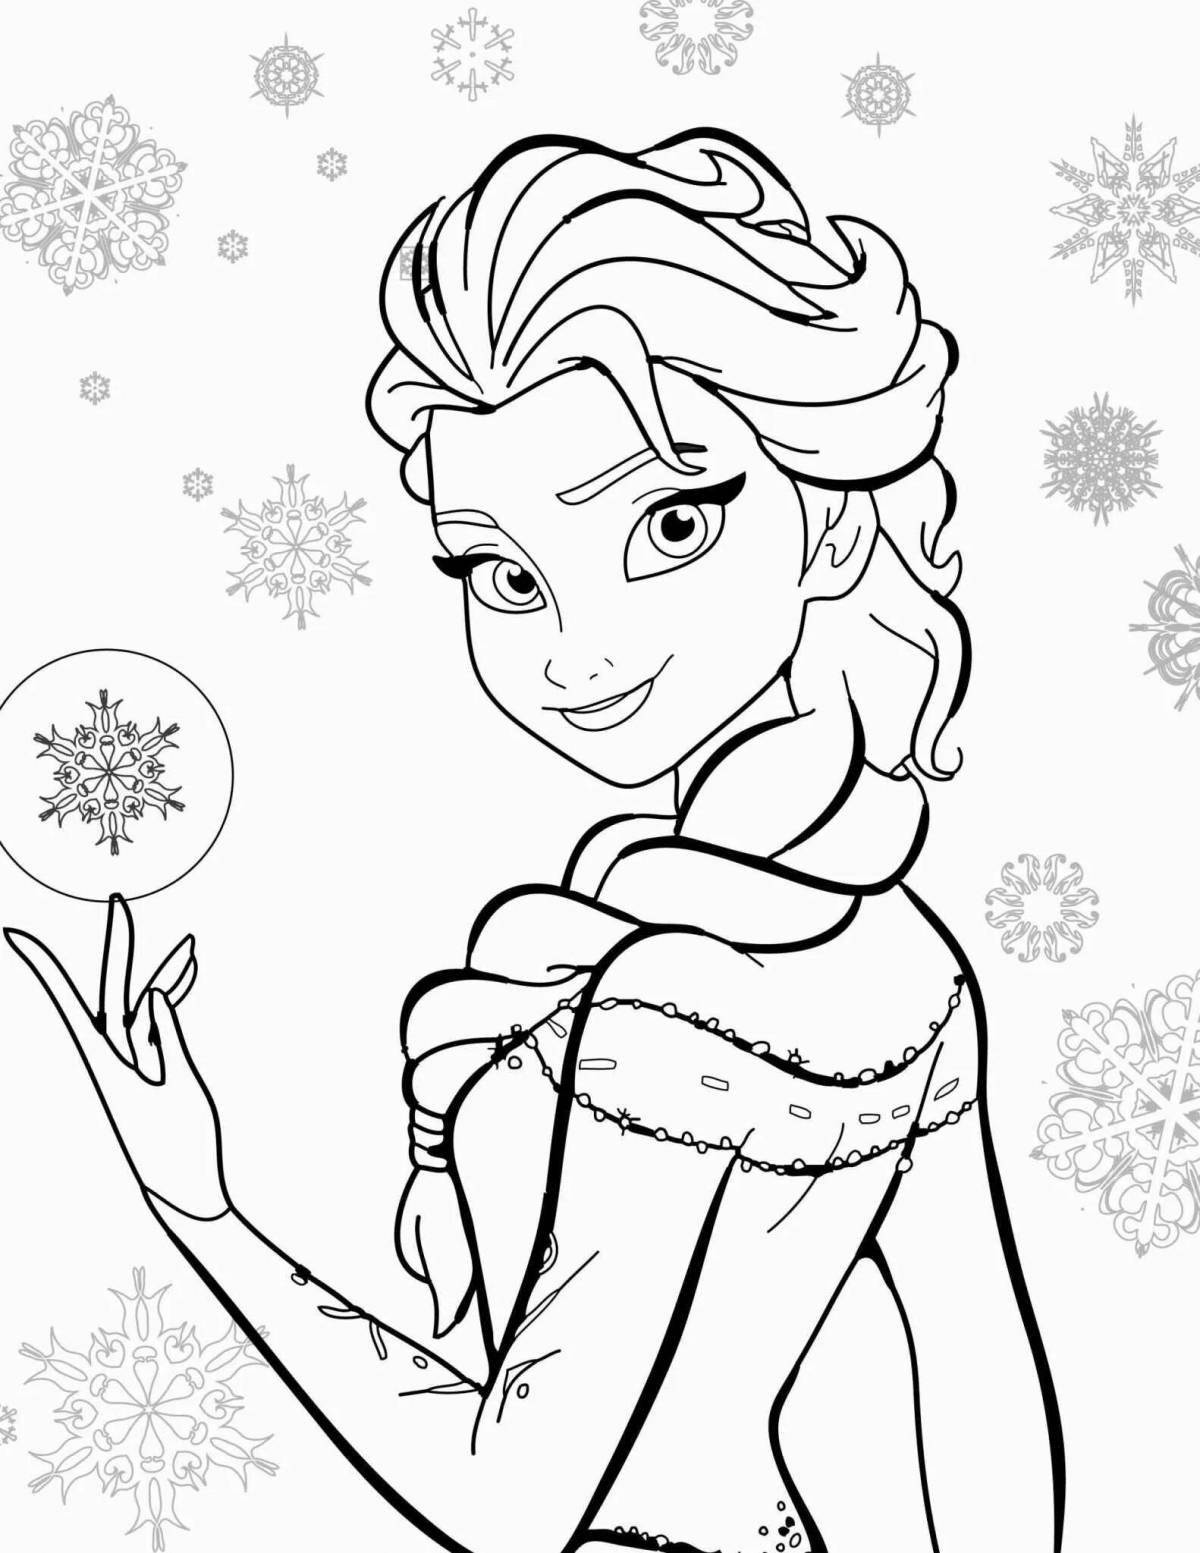 Elsa baby sweet coloring